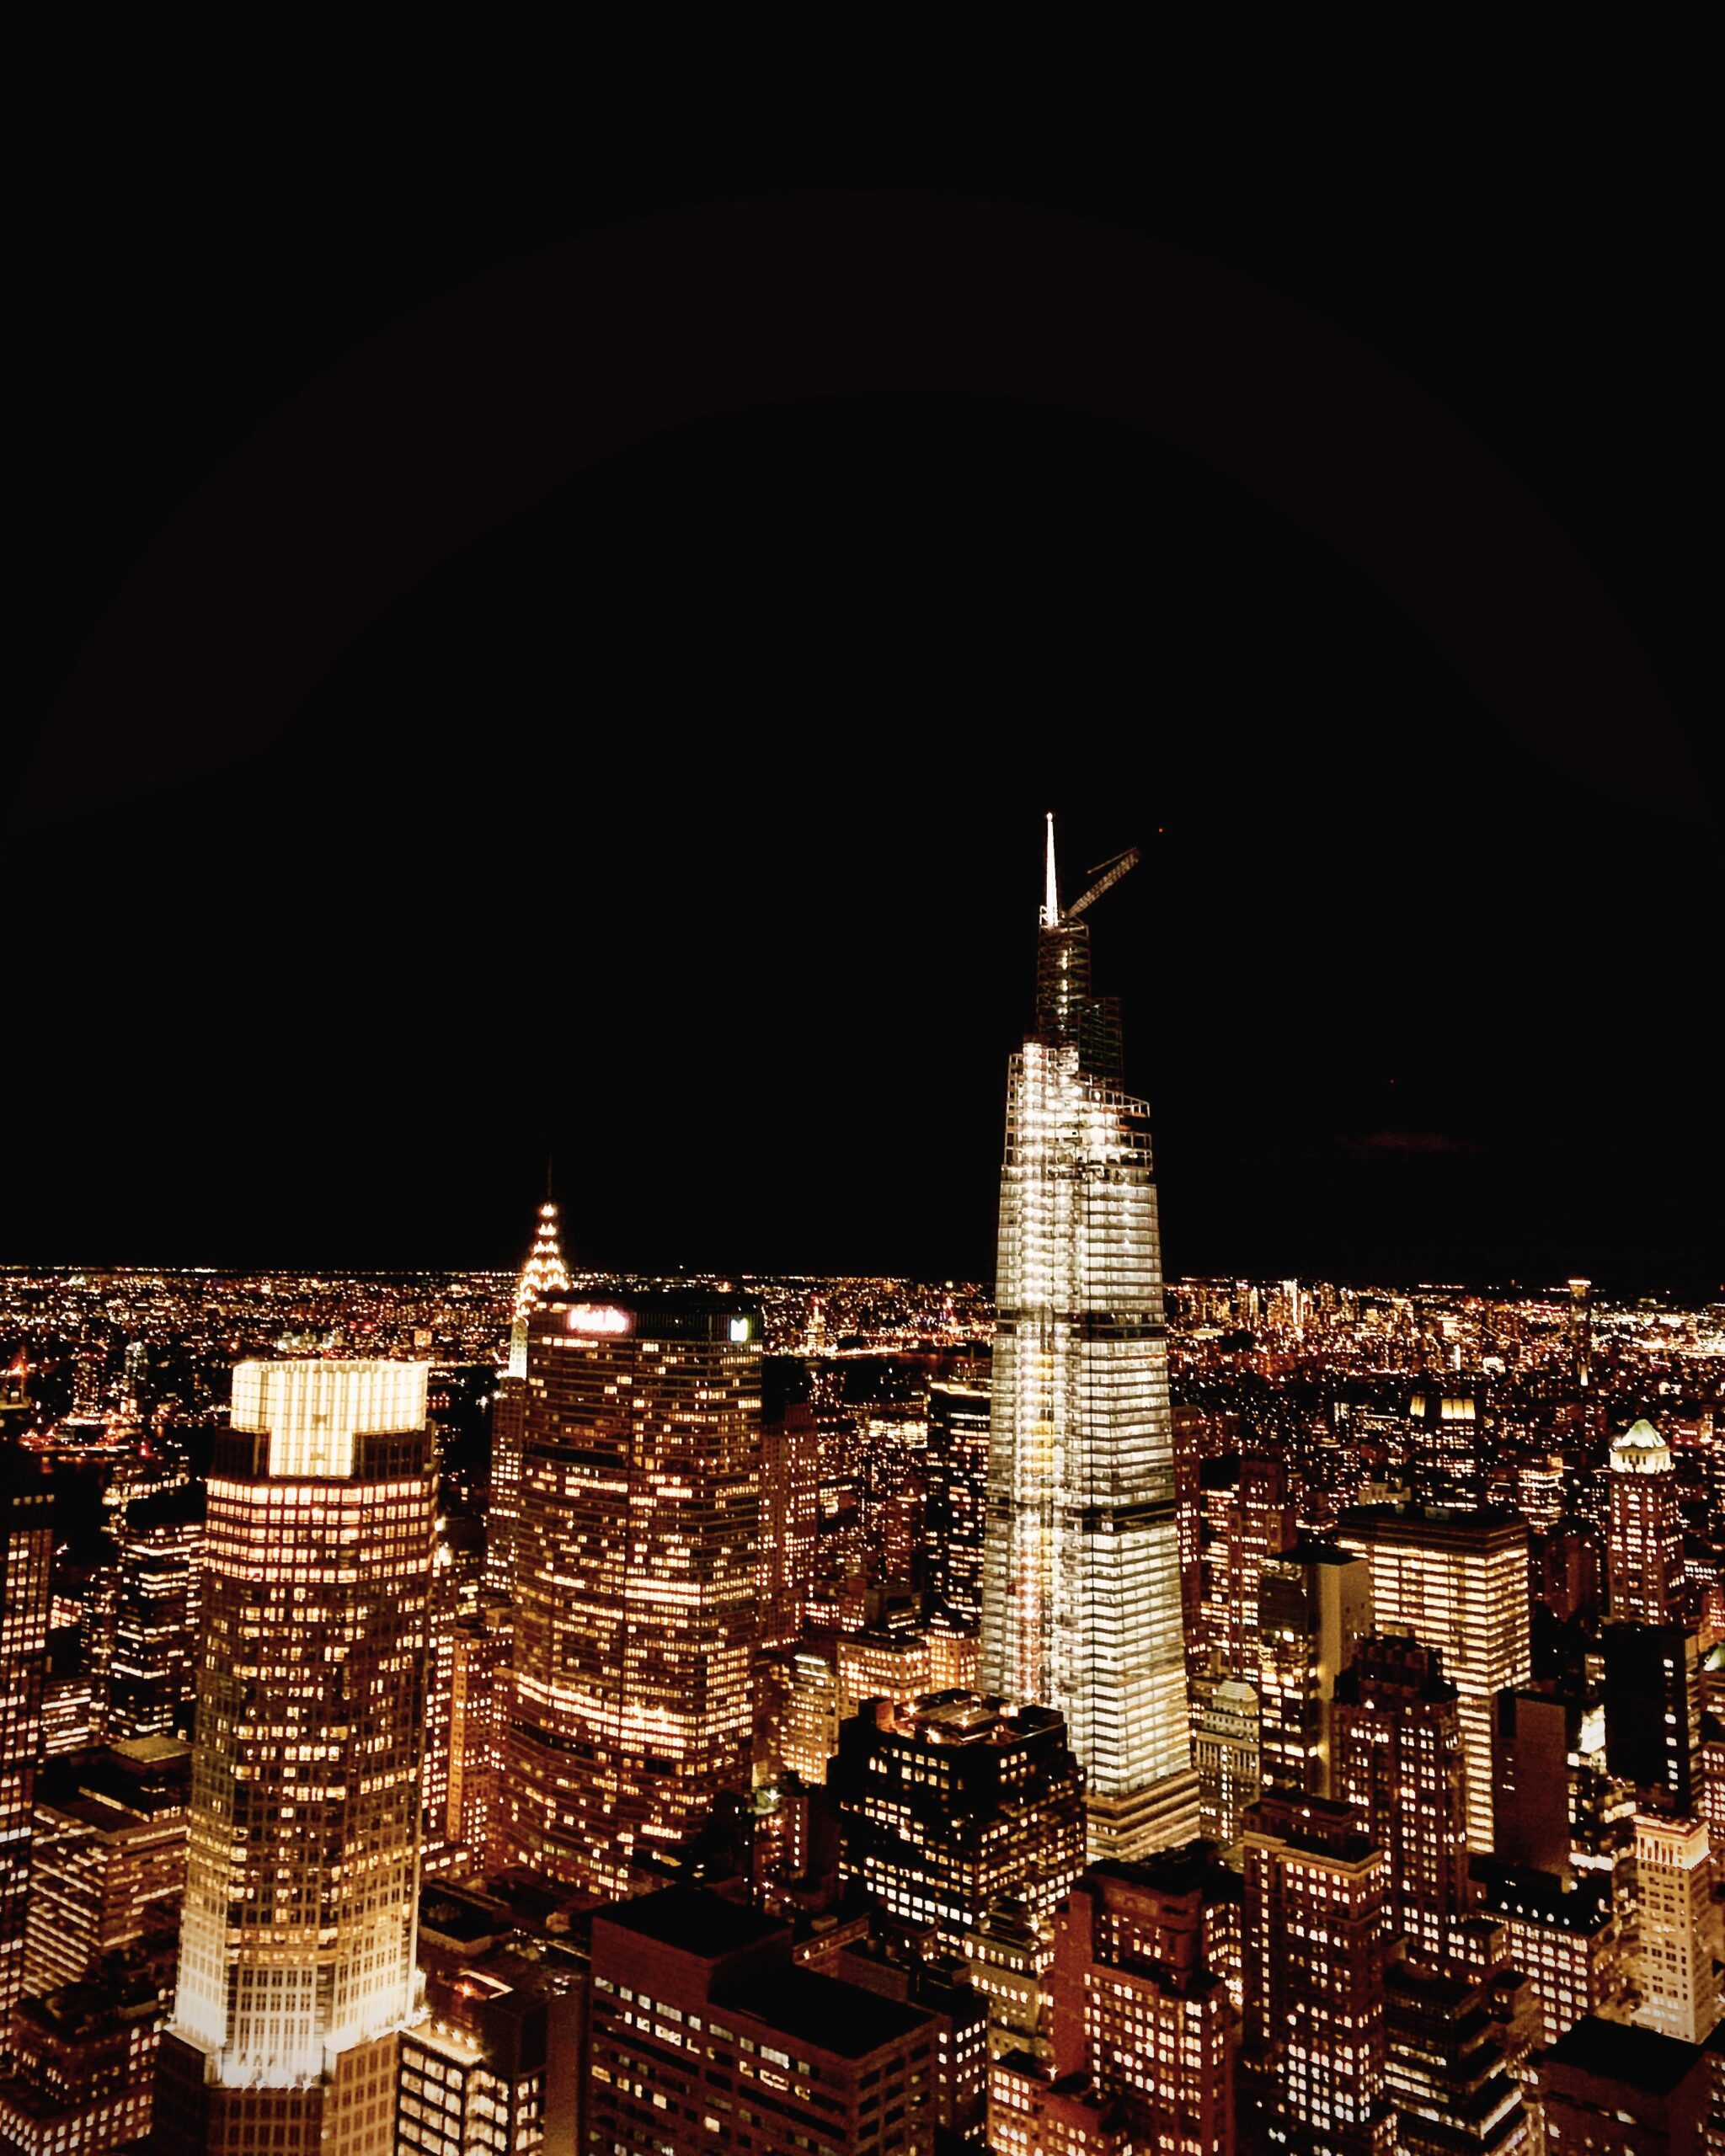 ニューヨークで夜景・摩天楼が楽しめる絶景スポット20選+